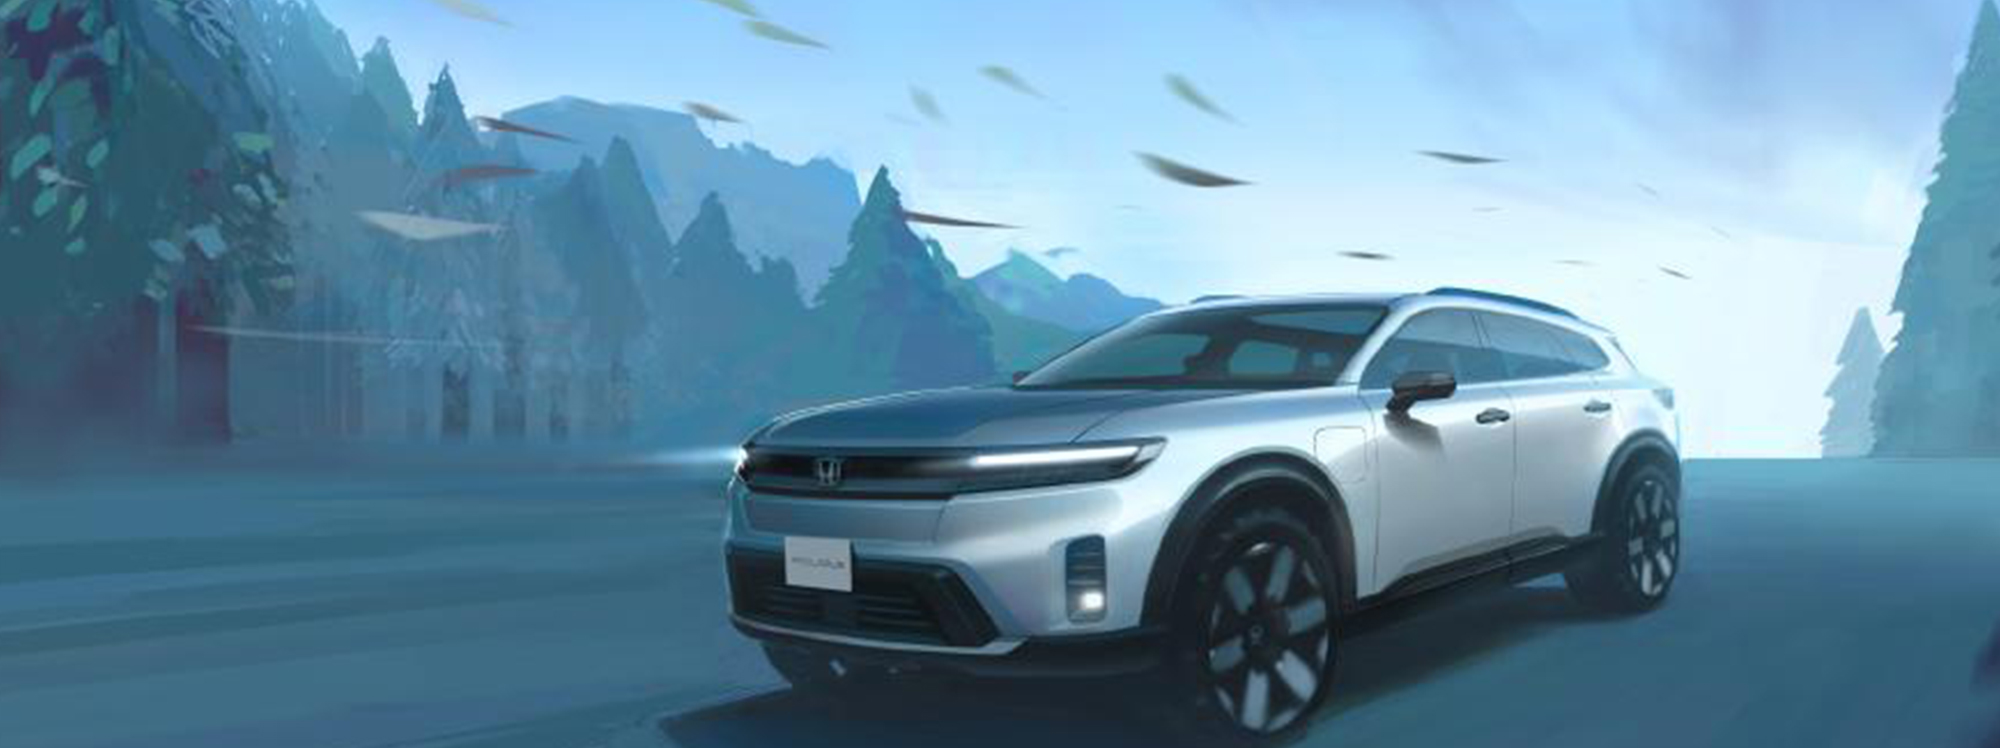 Honda presenta un SUV eléctrico listo para la aventura